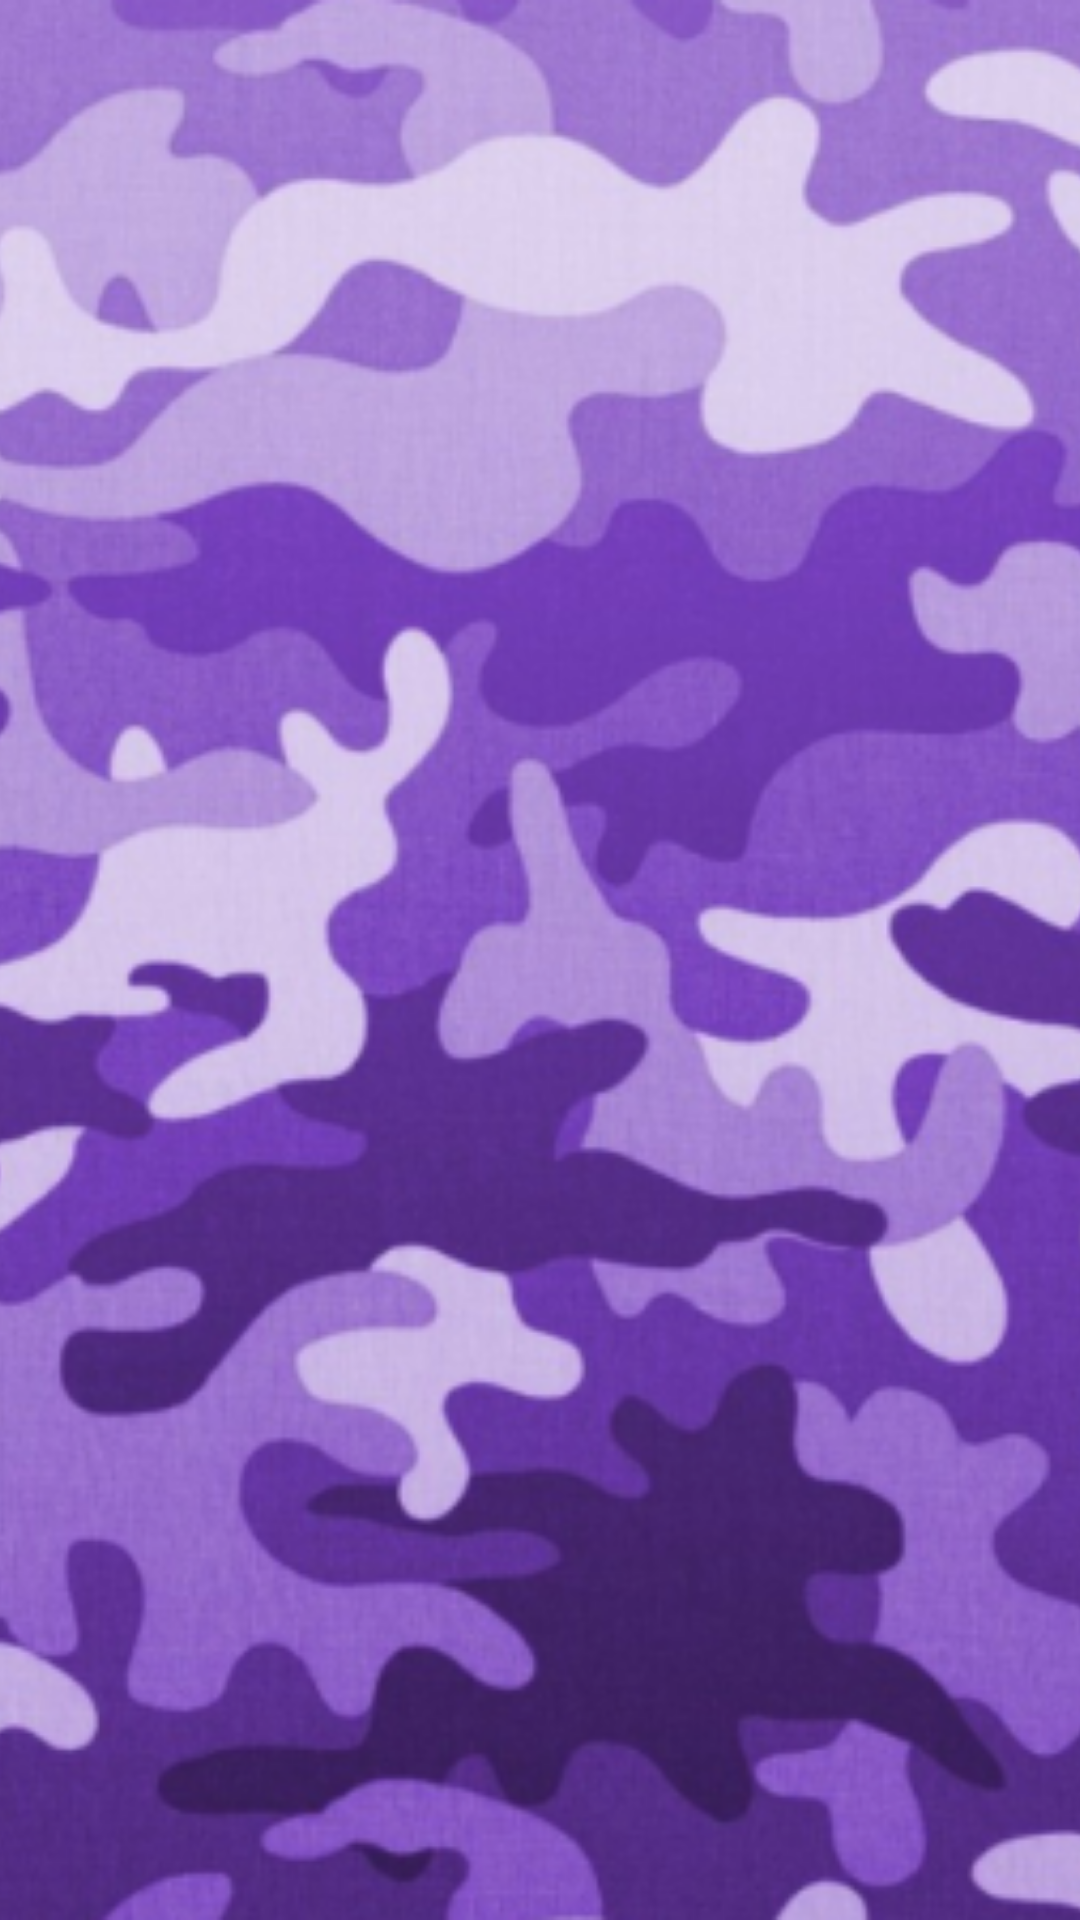 Lấy màu tím làm gam chủ đạo, bộ sưu tập Purple Baddie Wallpapers sẽ đem đến cho bạn những hình ảnh vô cùng quyến rũ và hấp dẫn. Phong cách Baddie thể hiện qua những hình ảnh này càng khiến bạn cảm thấy thú vị và ấn tượng.